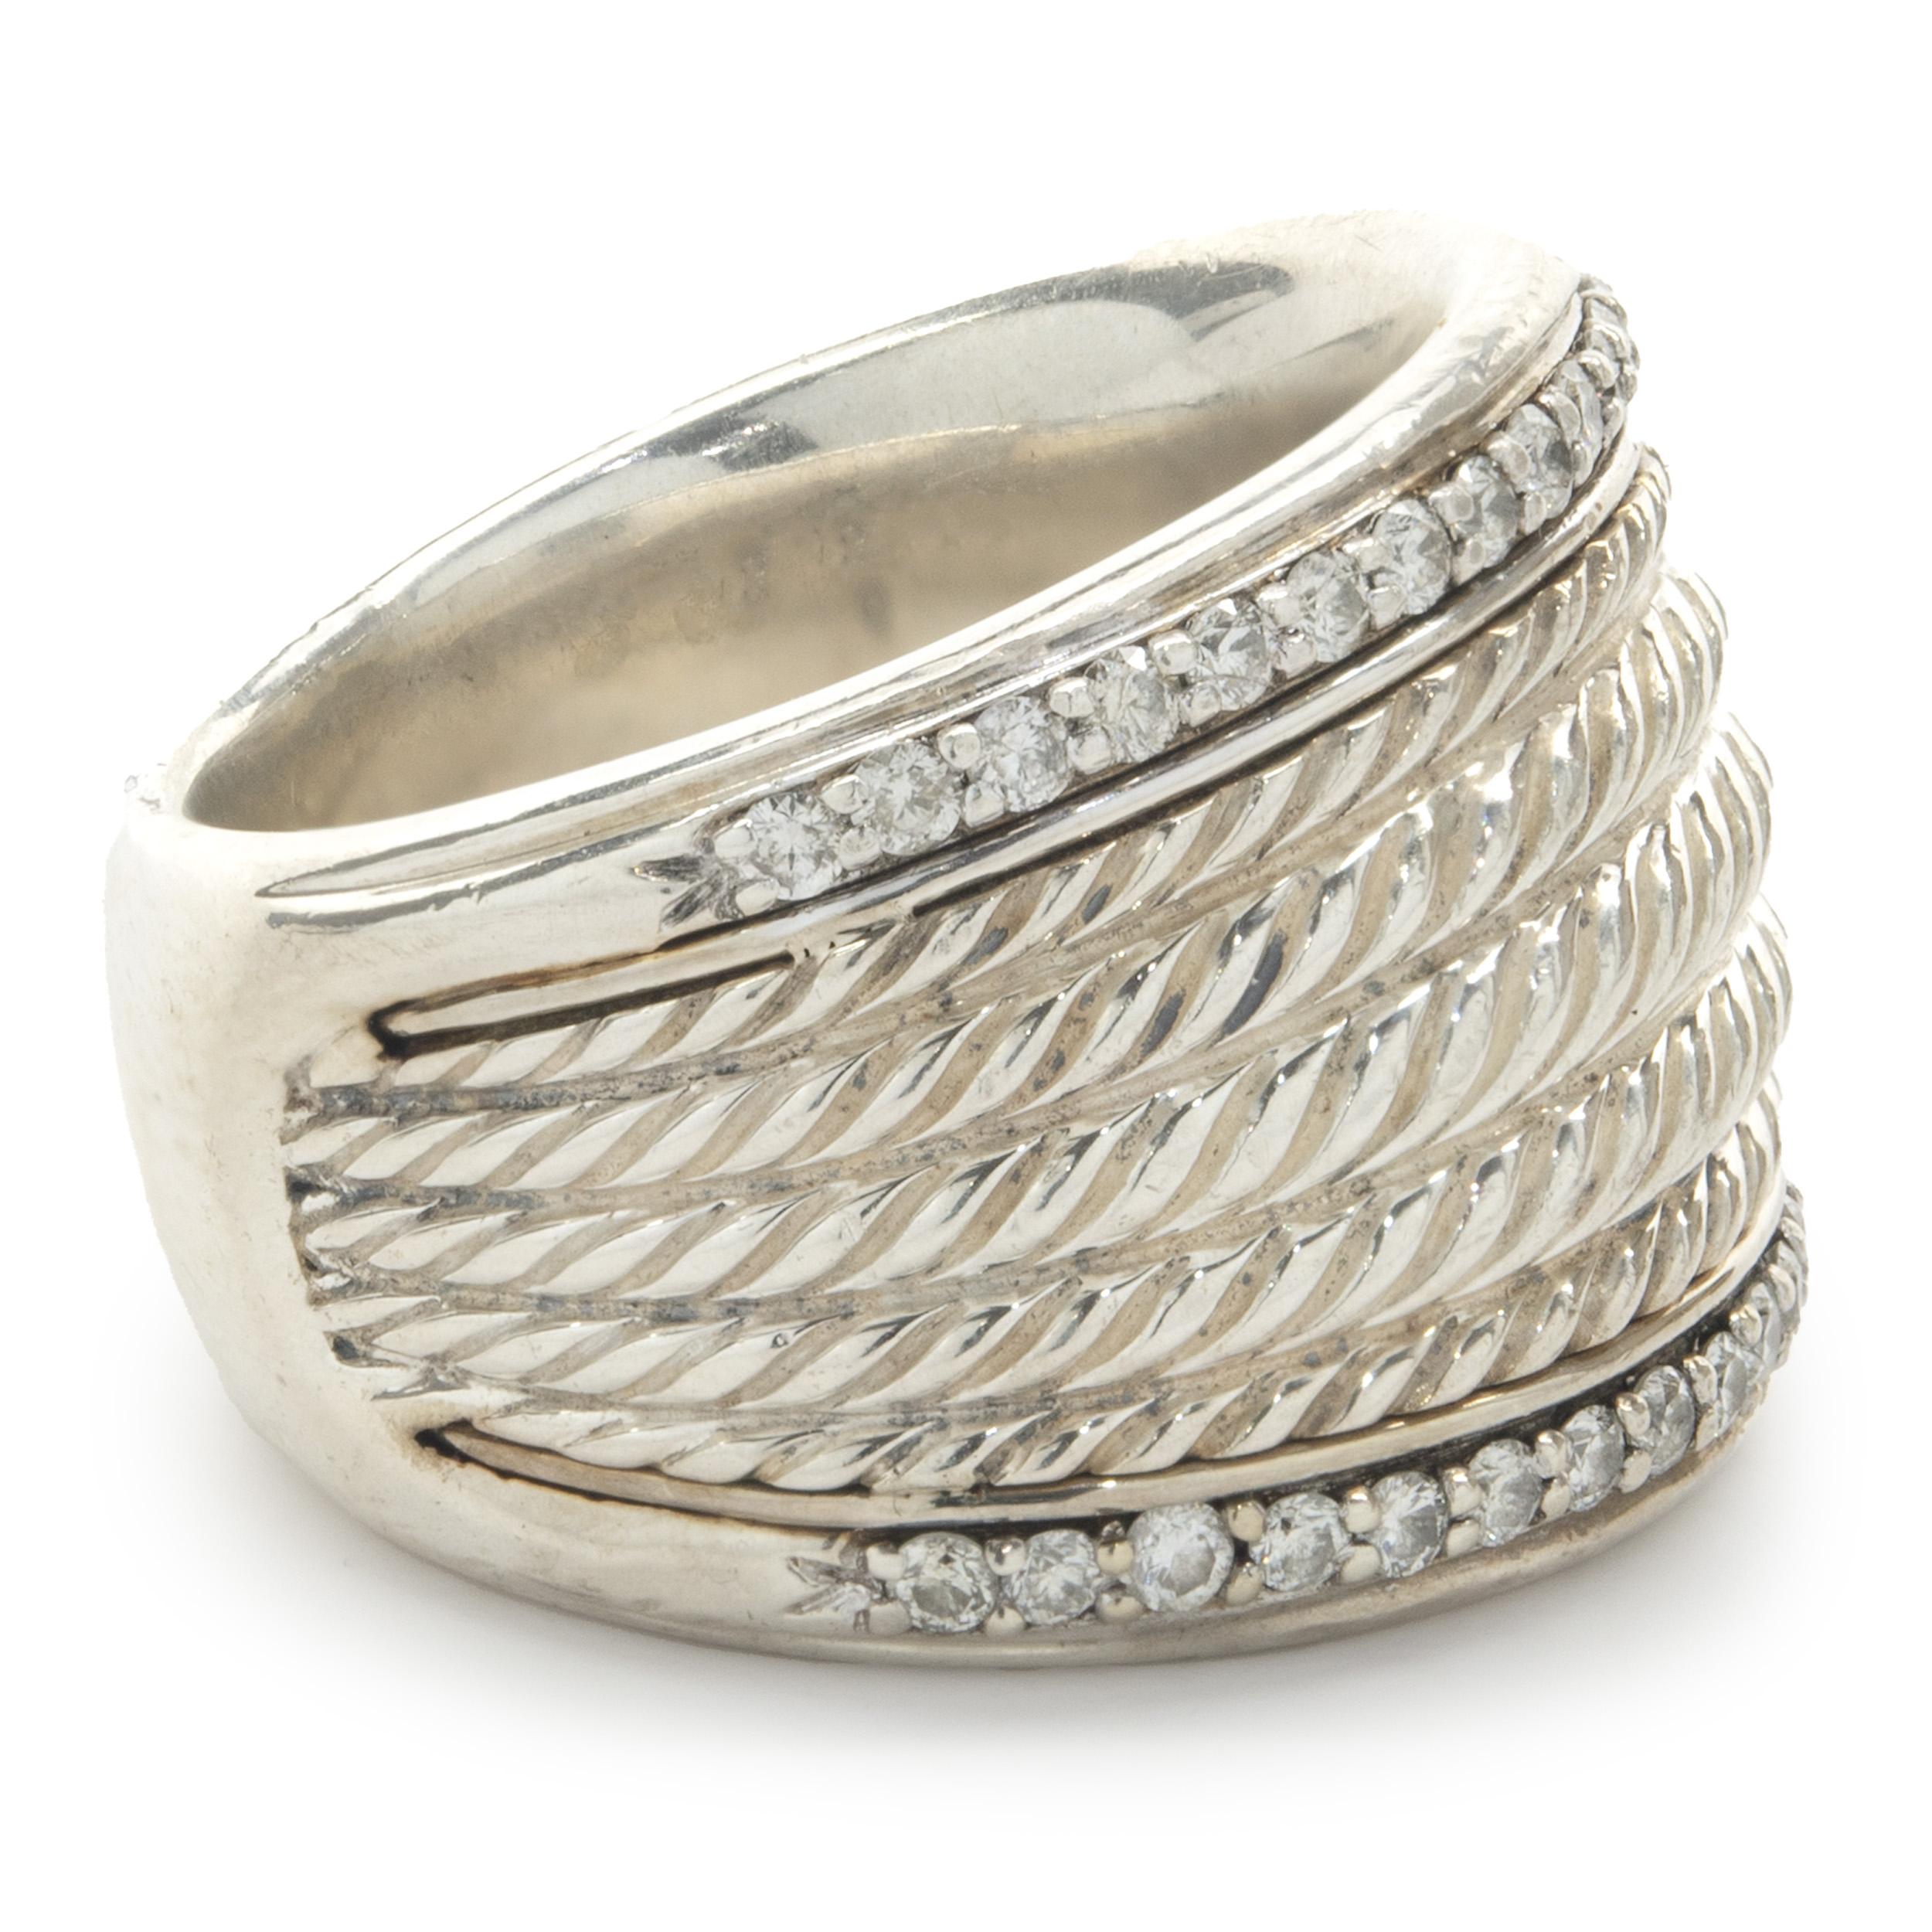 Designer: David Yurman
MATERIAL: Sterling Silber
Abmessungen: Ring ist 17 mm breit
Größe: 6,75
Gewicht: 21,38 Gramm